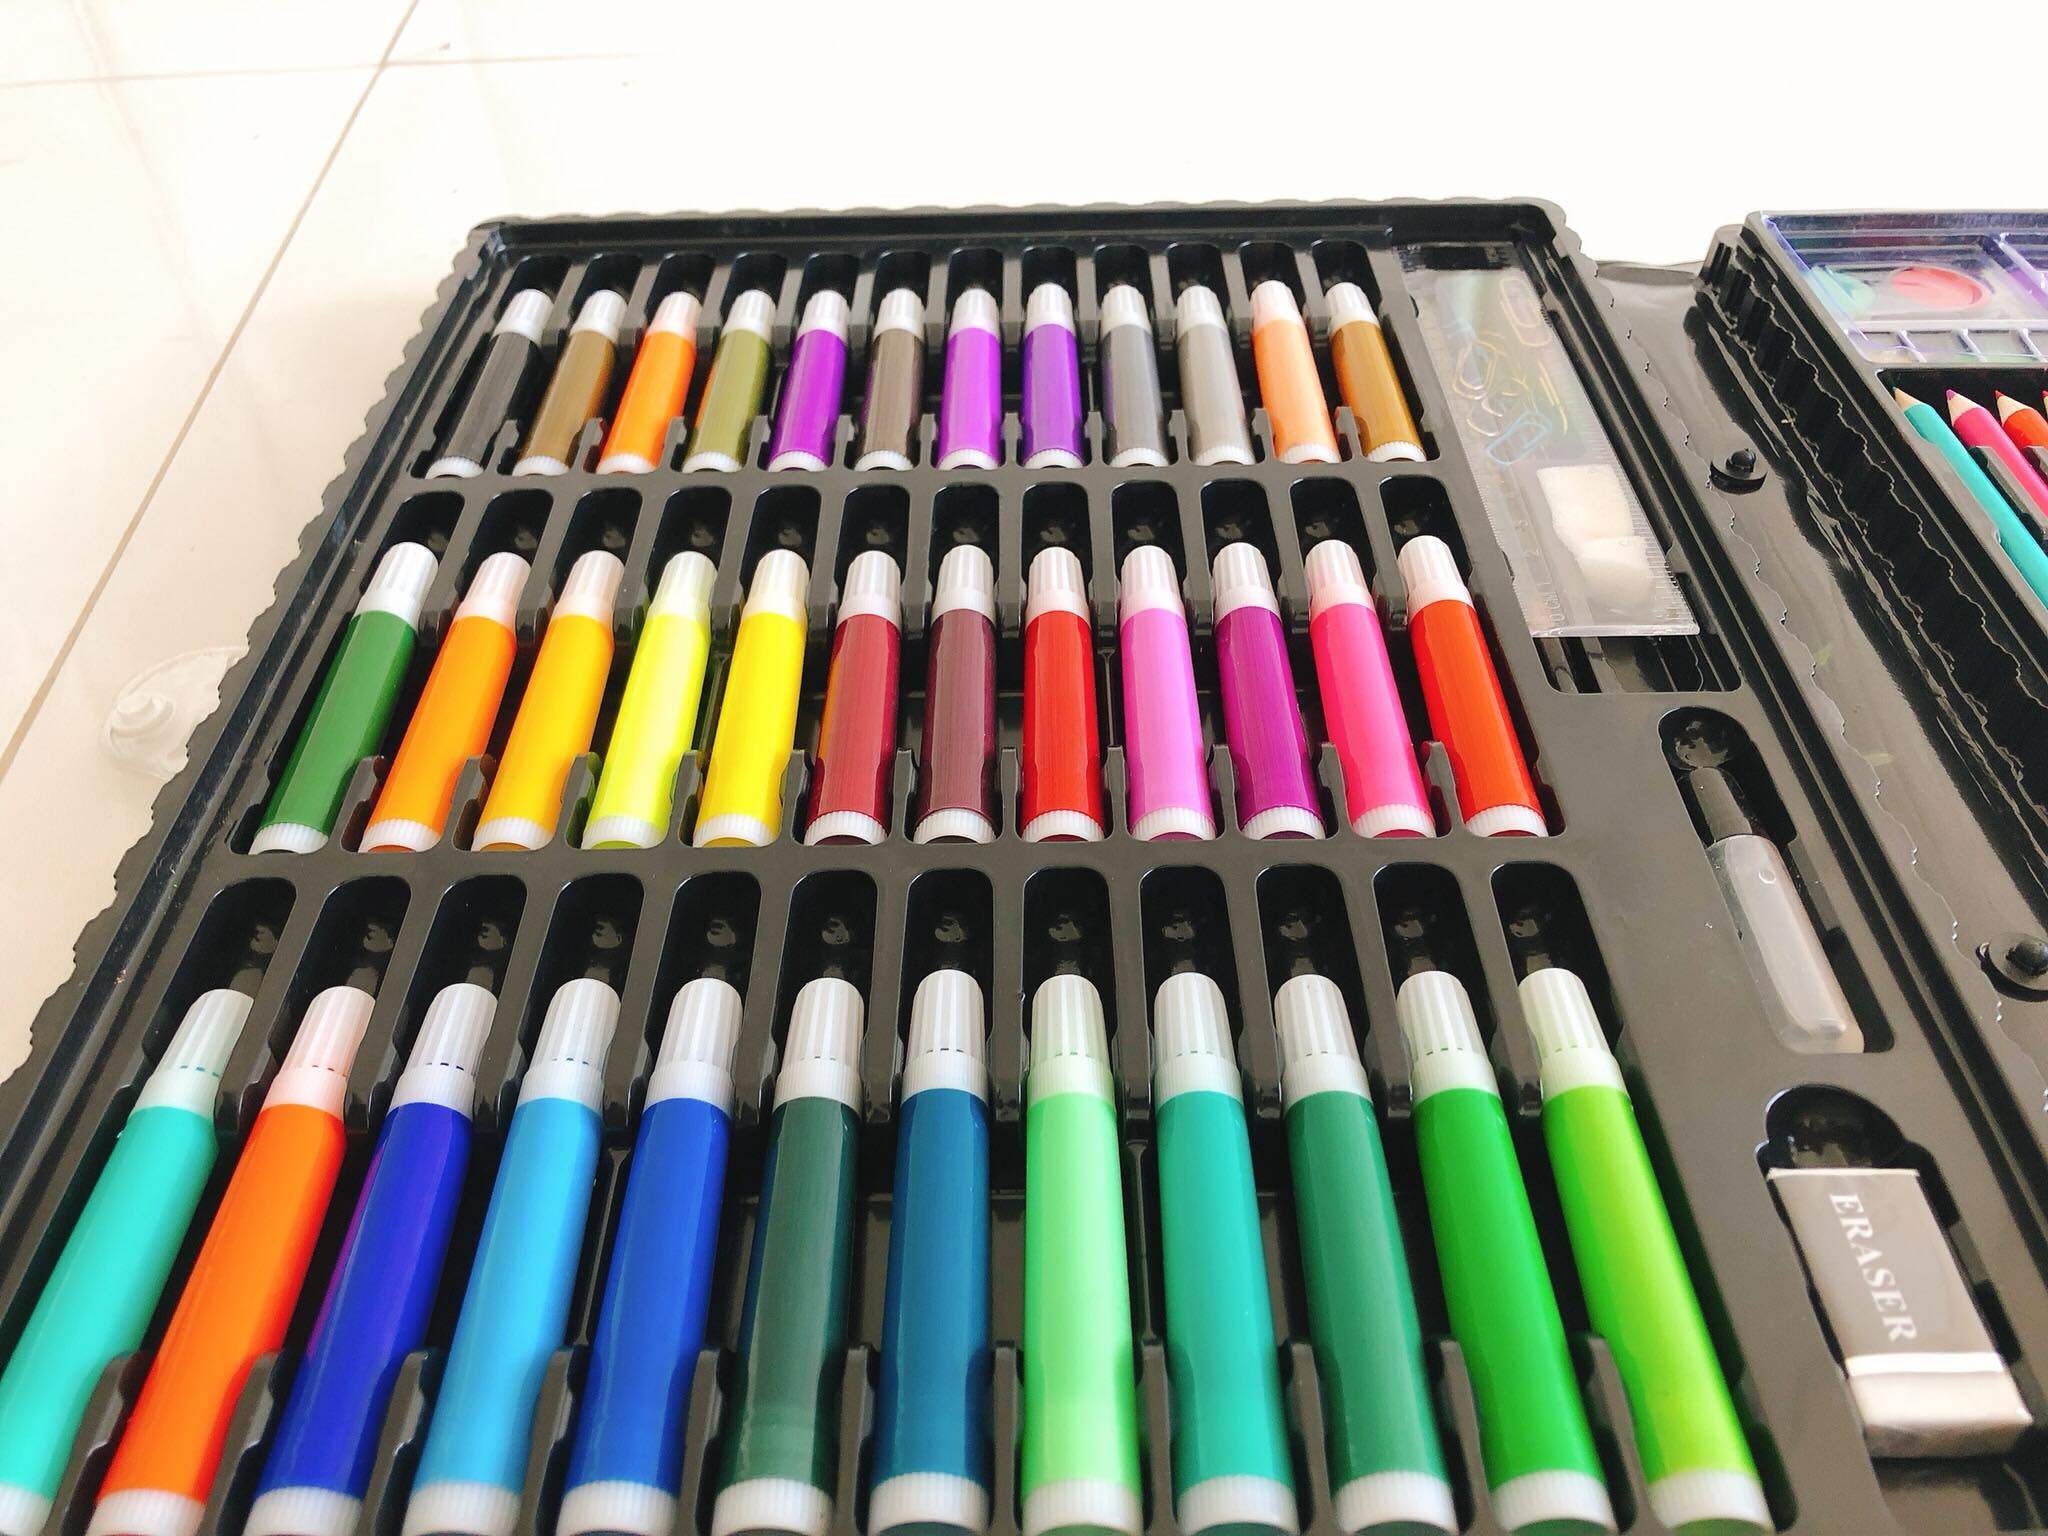 ซื้อ 1 แถม 1 ชุดระบายสี 150 ชิ้น ได้ชุดระบายสี 2 กล่อง #เครื่องเขียน  # สี  # ดินสอ  # สีไม้  # ดินสอสี  #ระบายสีเด็ก  # เครื่